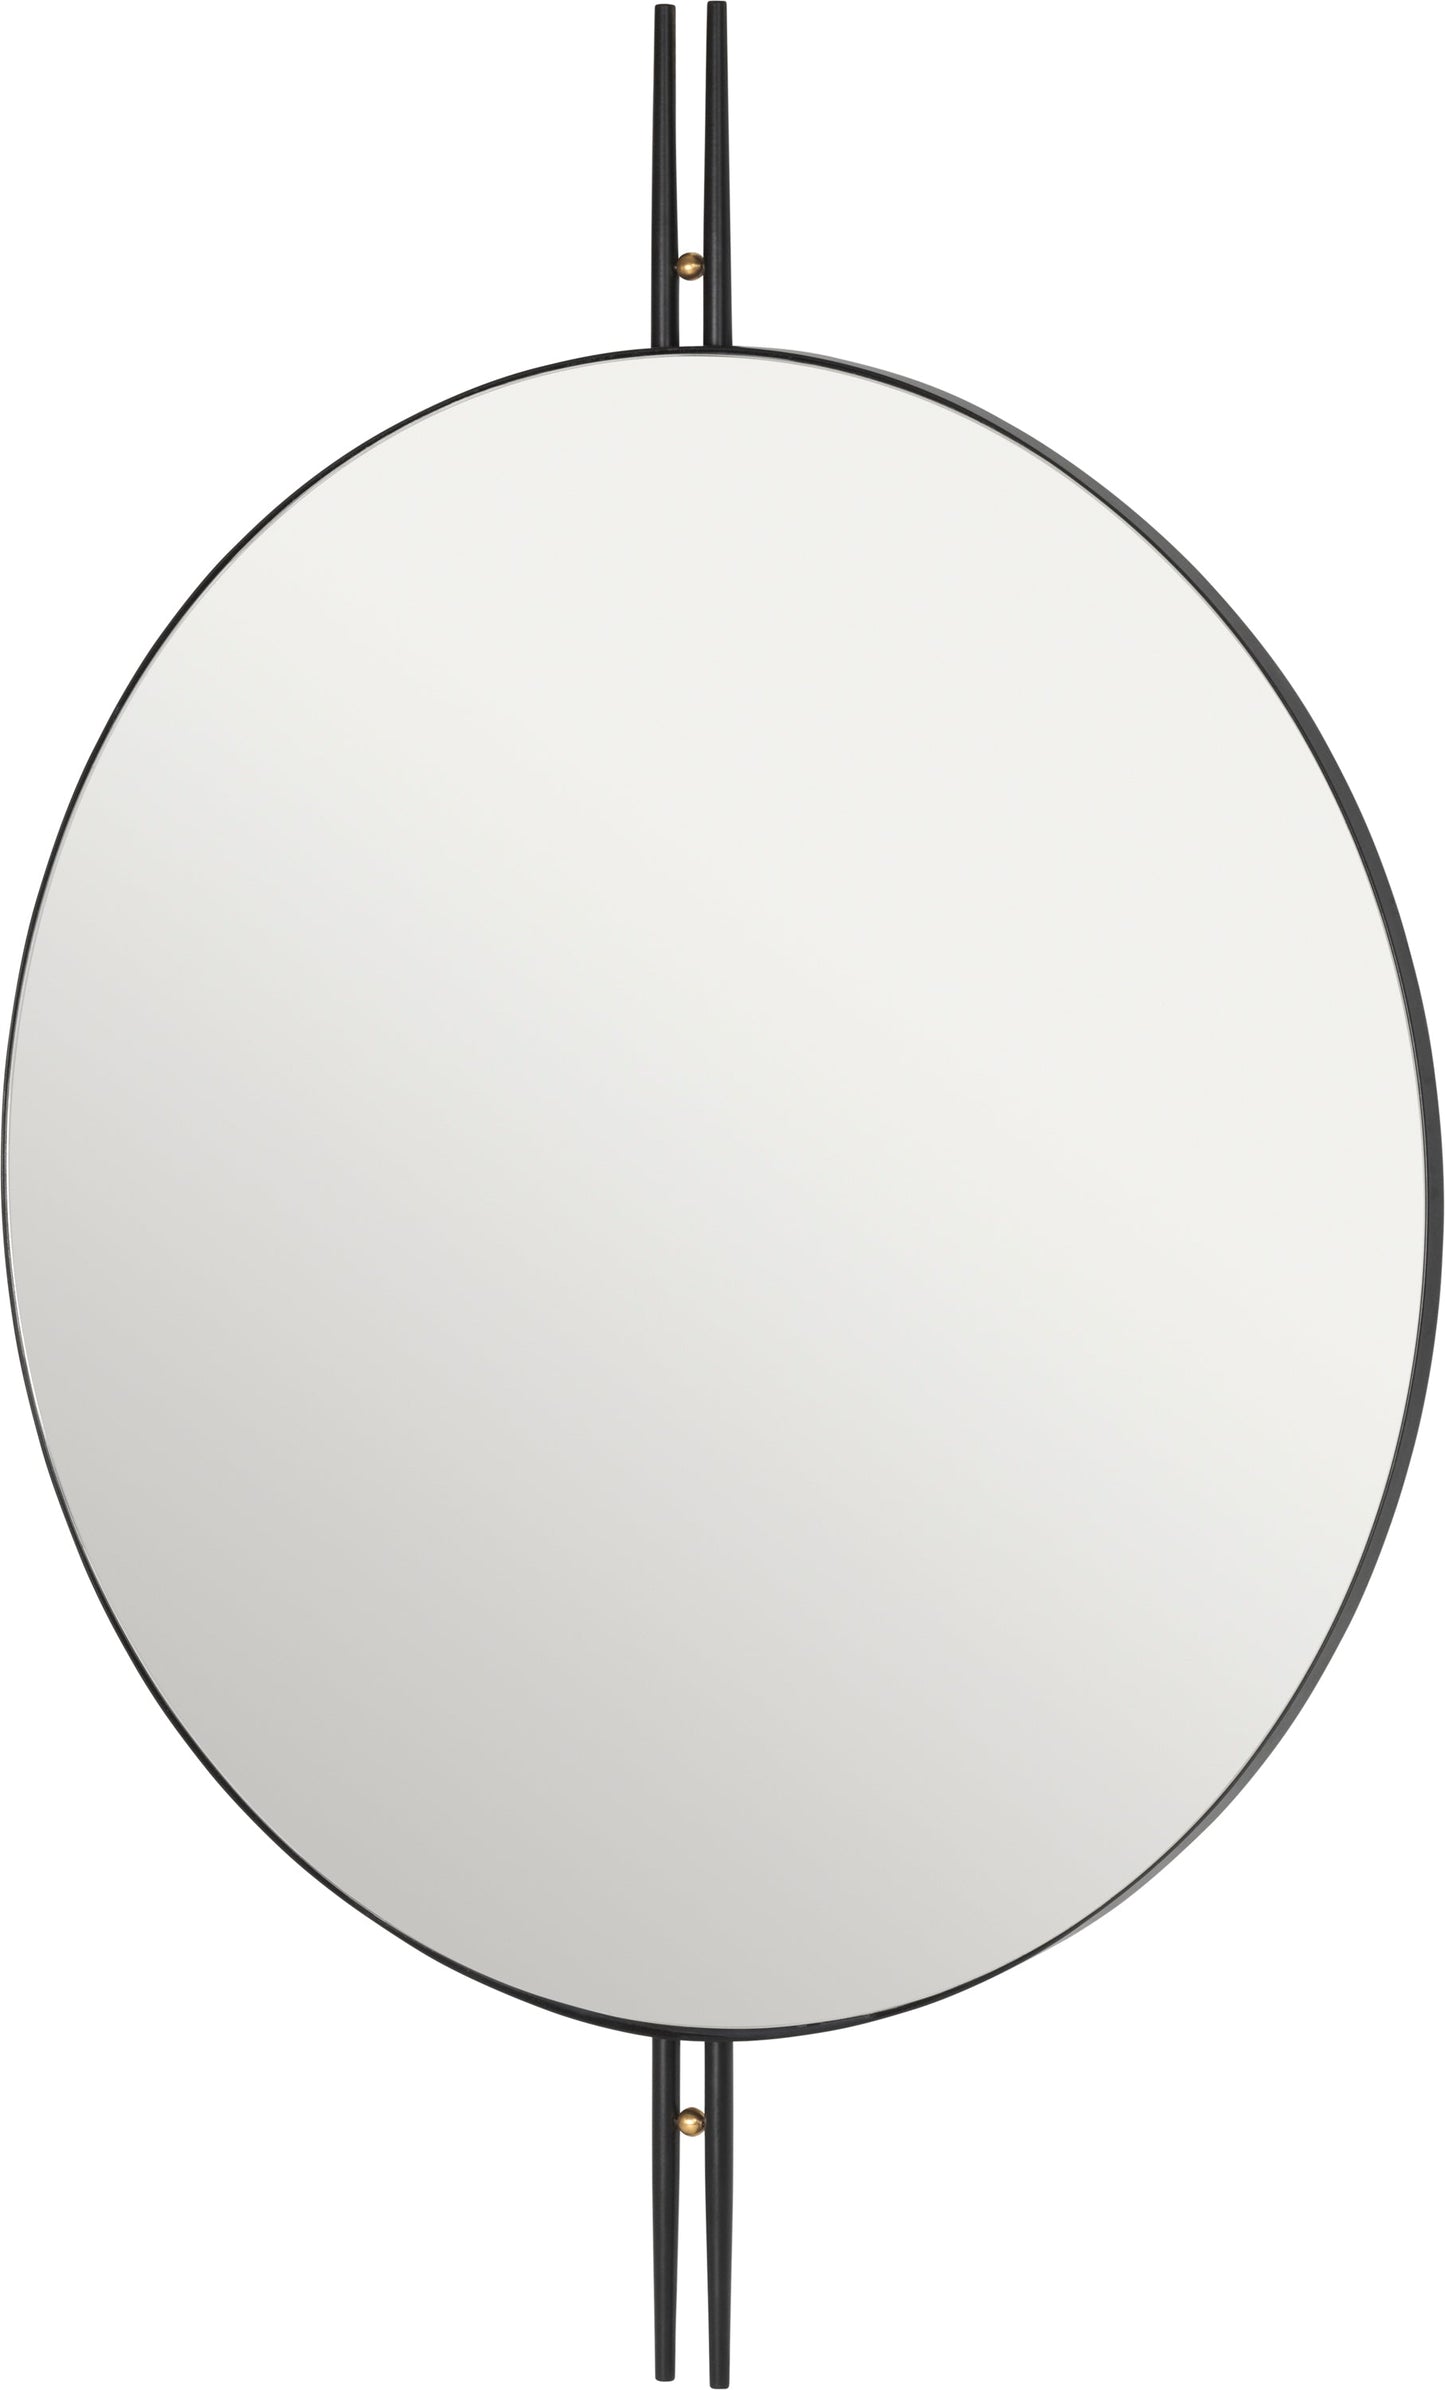 IOI Wall Mirror - Round, 80cm